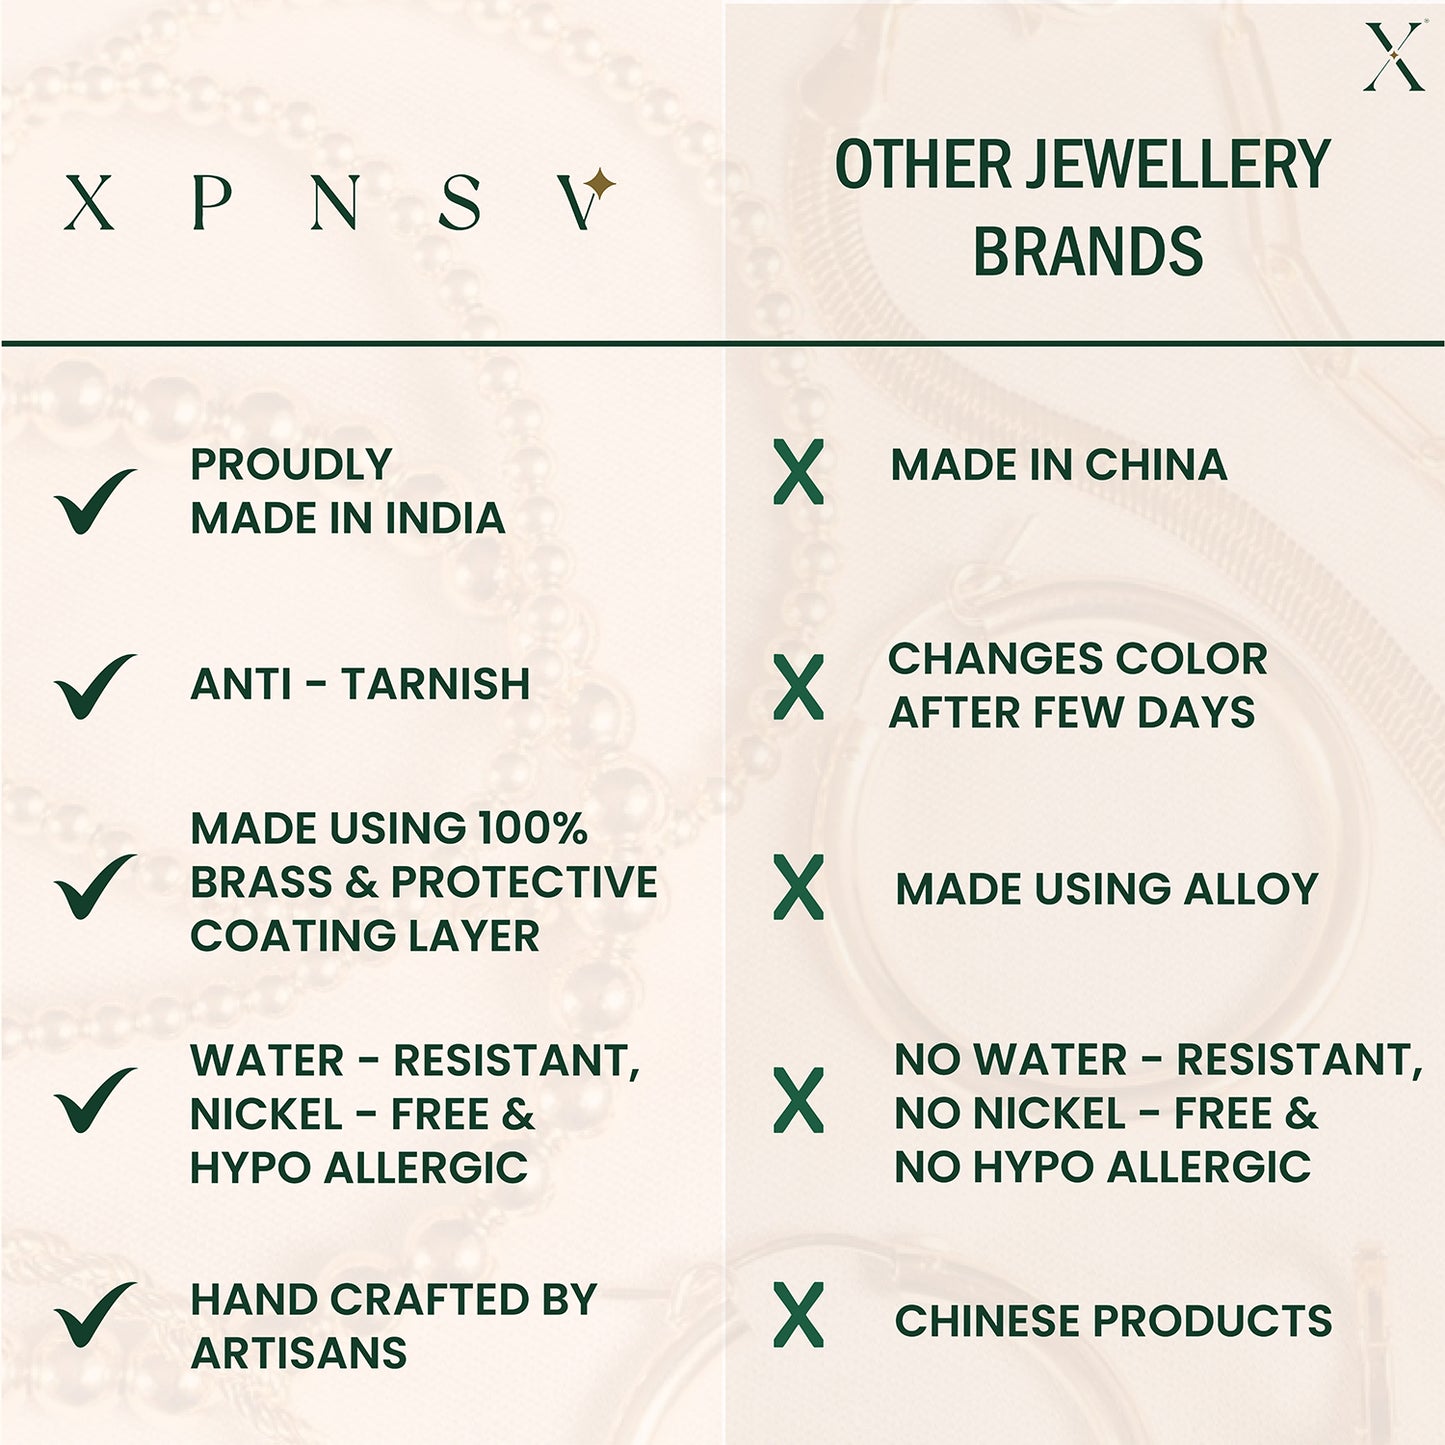 Set-Of-3 Onyx Gemstones Chains Bracelet